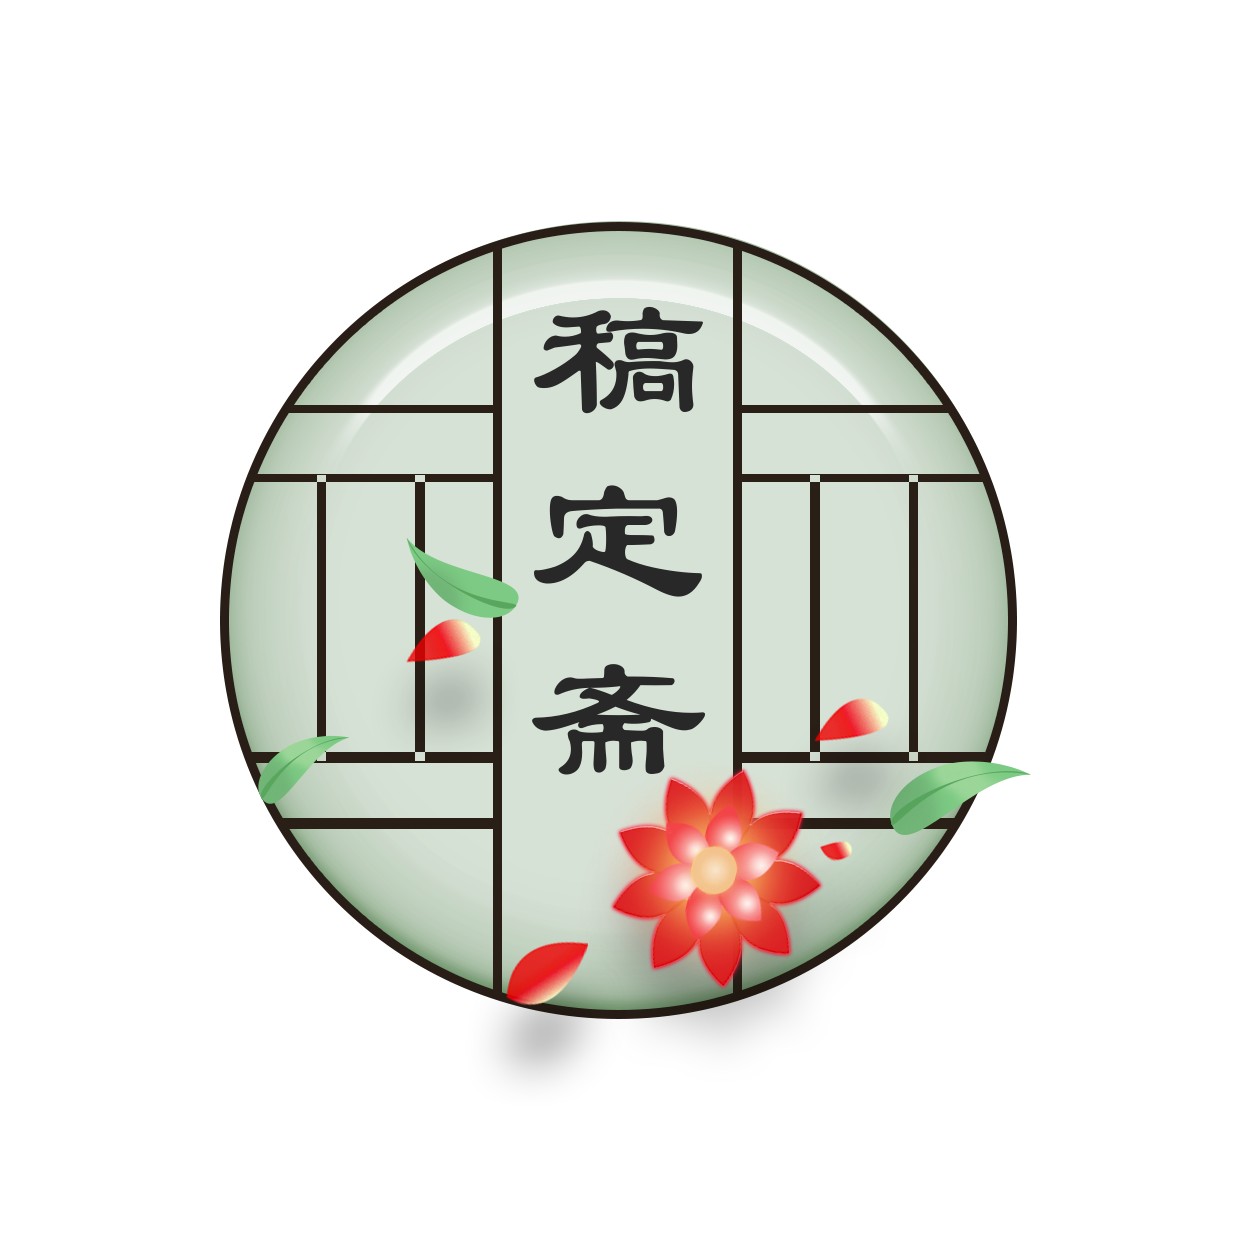 中国风创意头像Logo